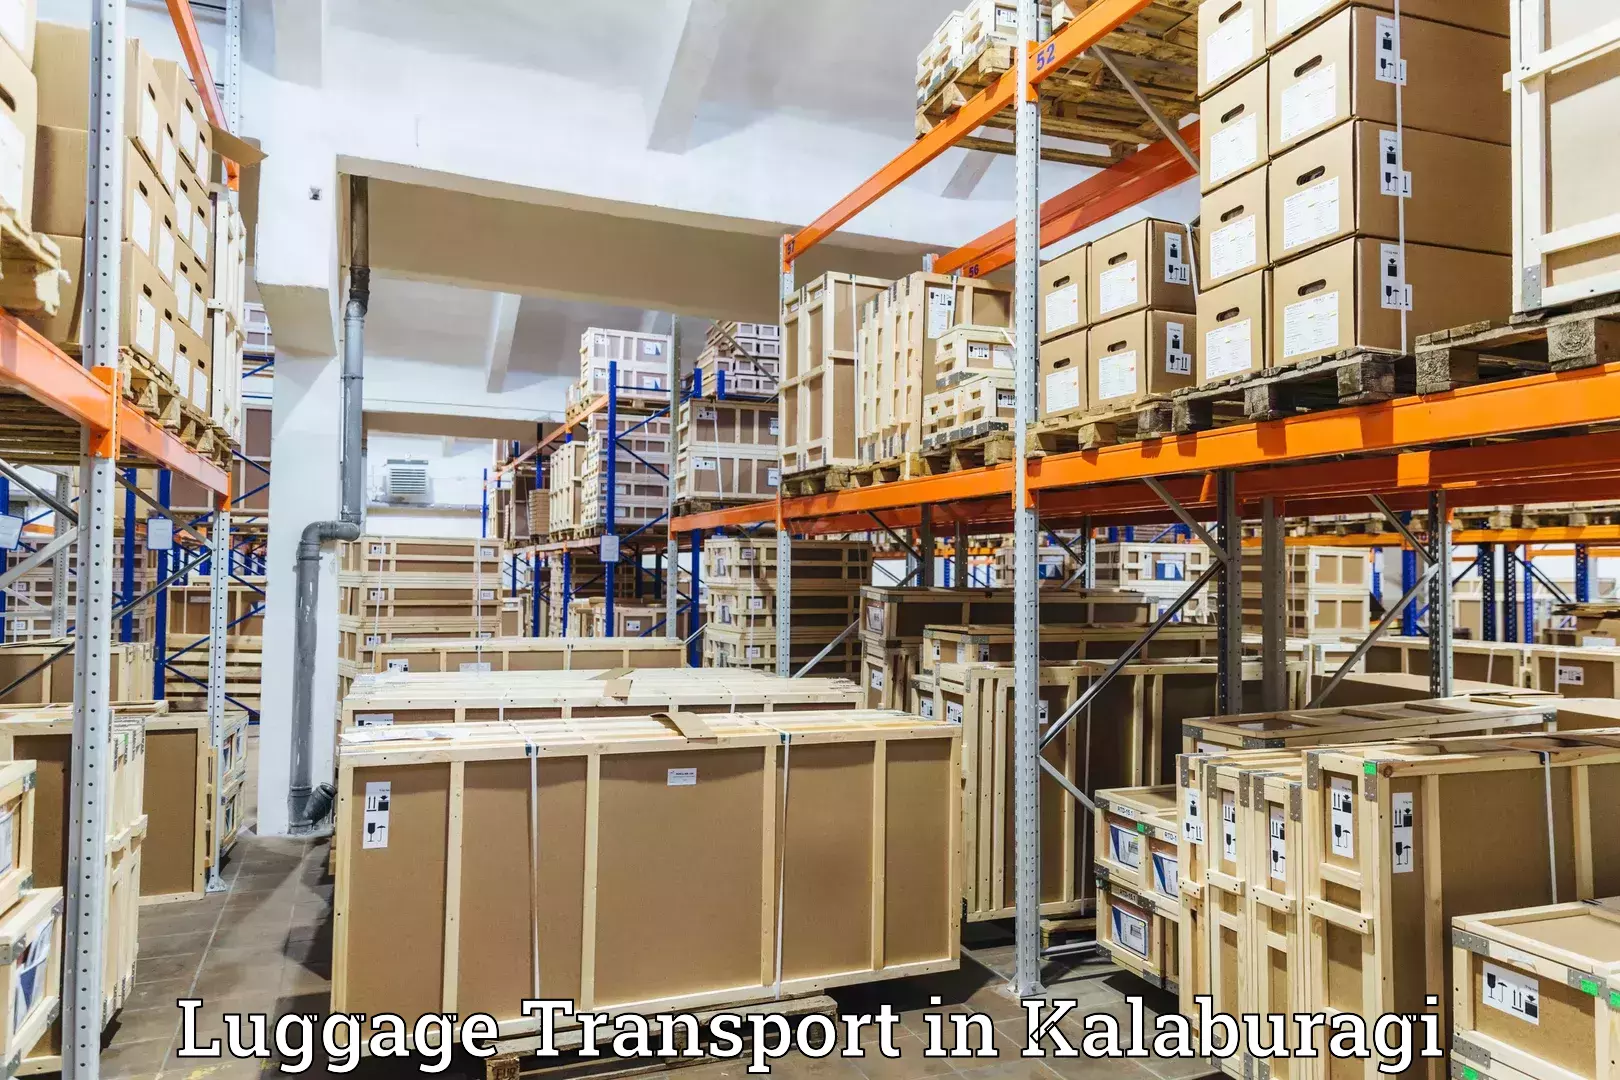 Baggage transport scheduler in Kalaburagi